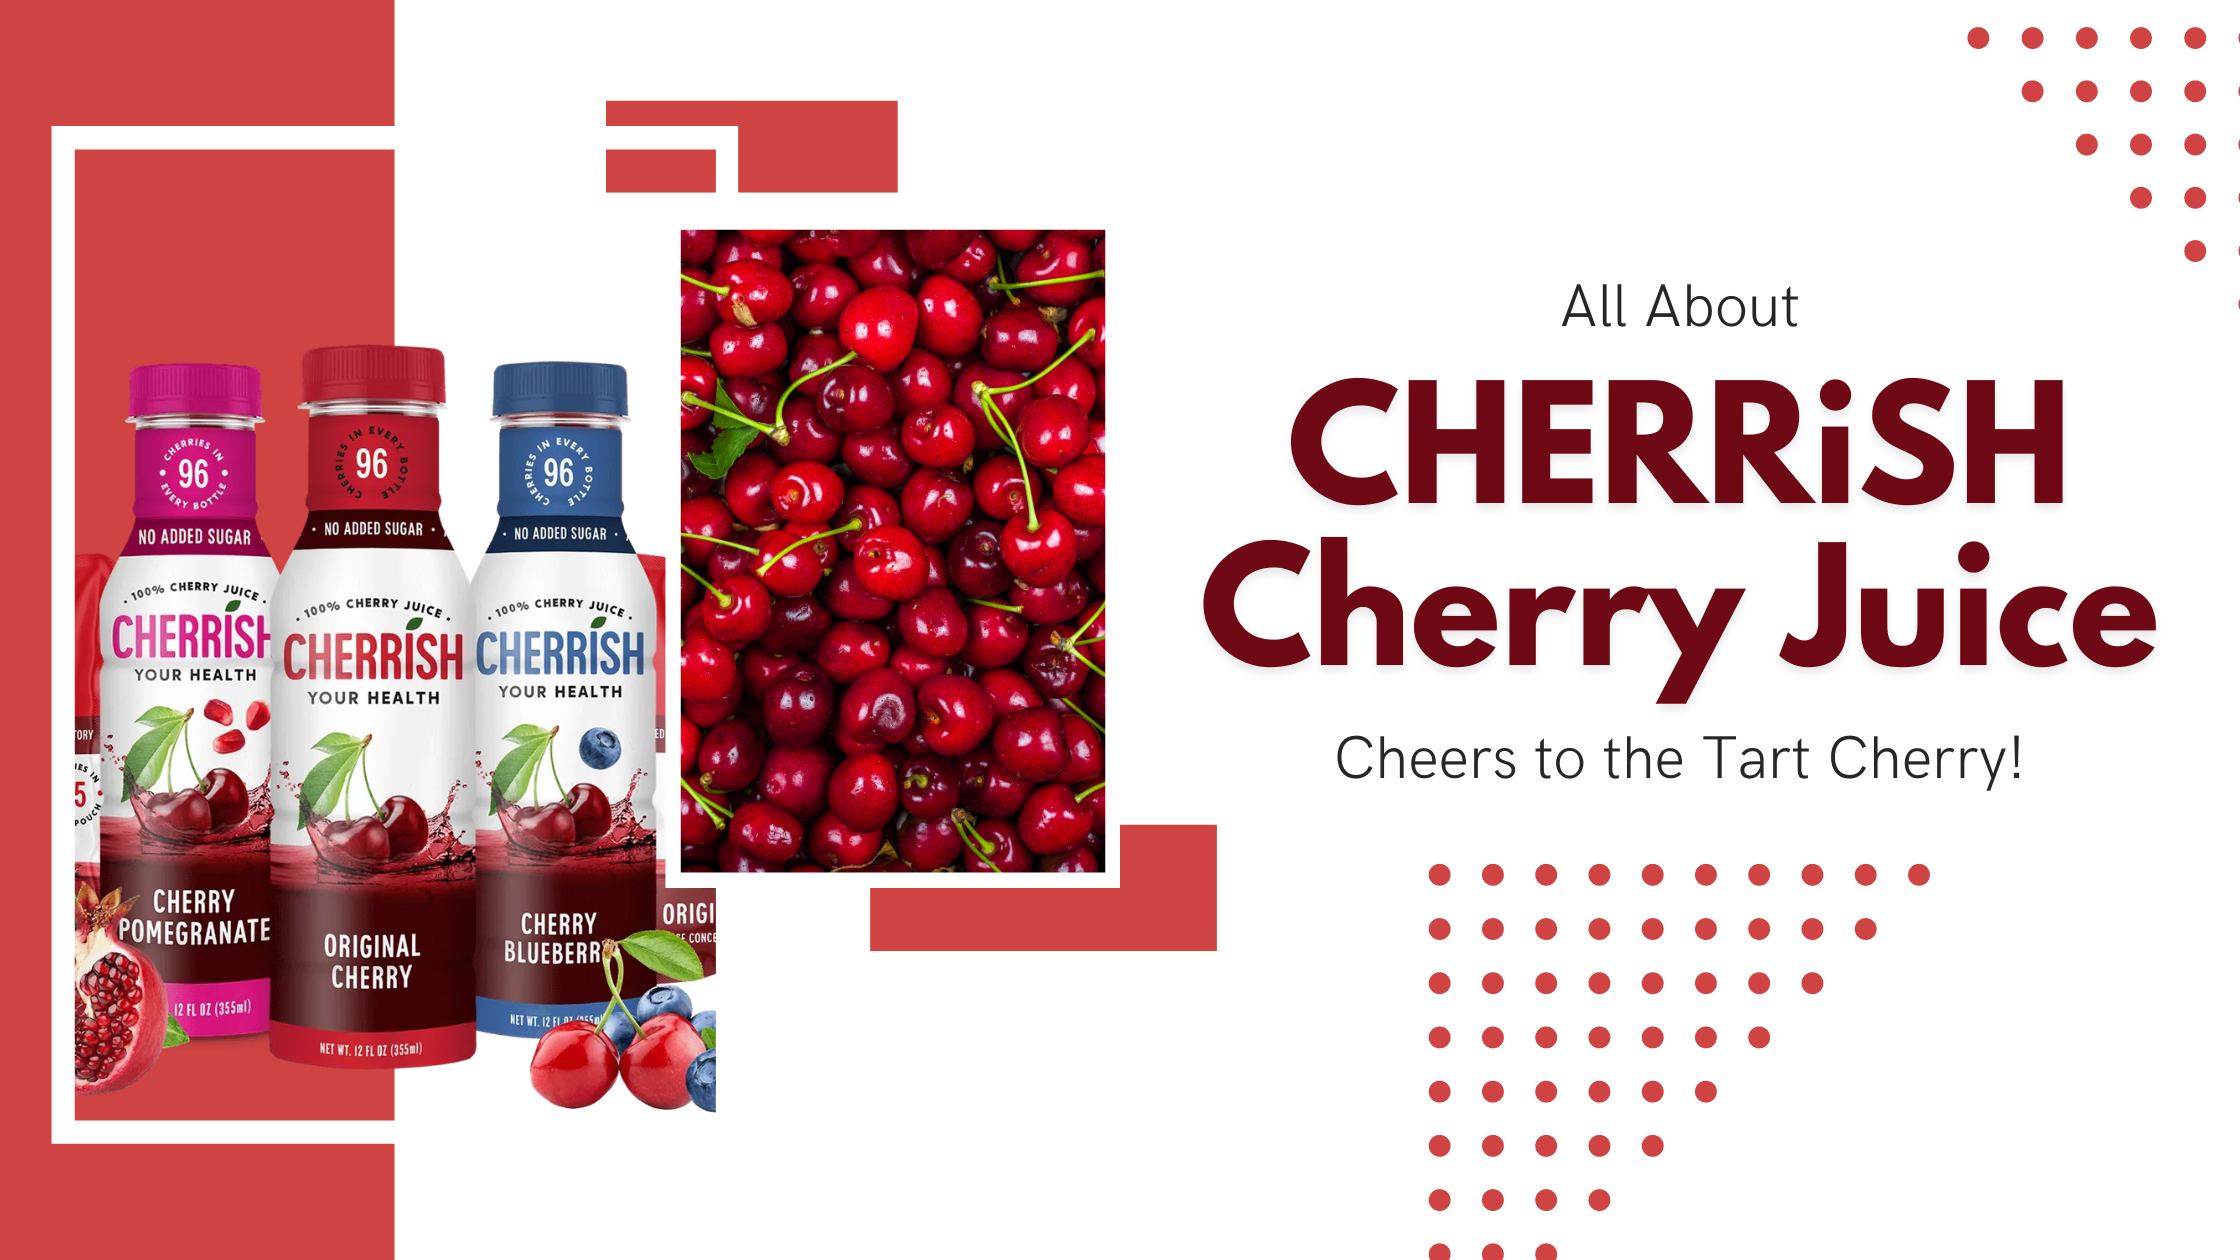 Cherrish Cherry Juice Cheers to the Tart Cherry